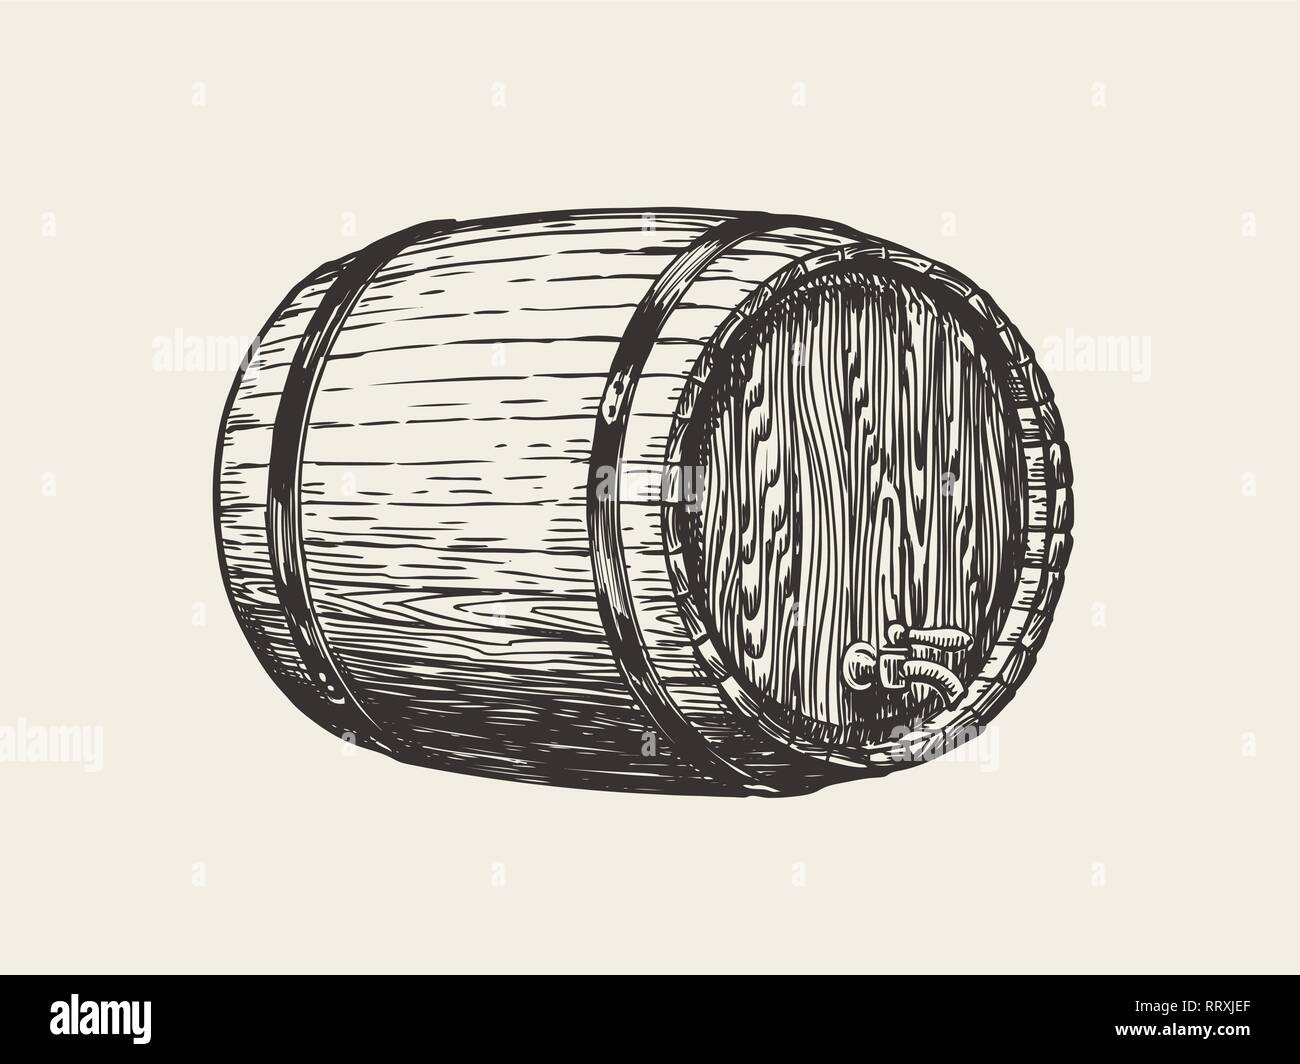 In legno di rovere canna. Il vino, il whisky, pub sketch. Disegnata a mano vintage illustrazione vettoriale Illustrazione Vettoriale